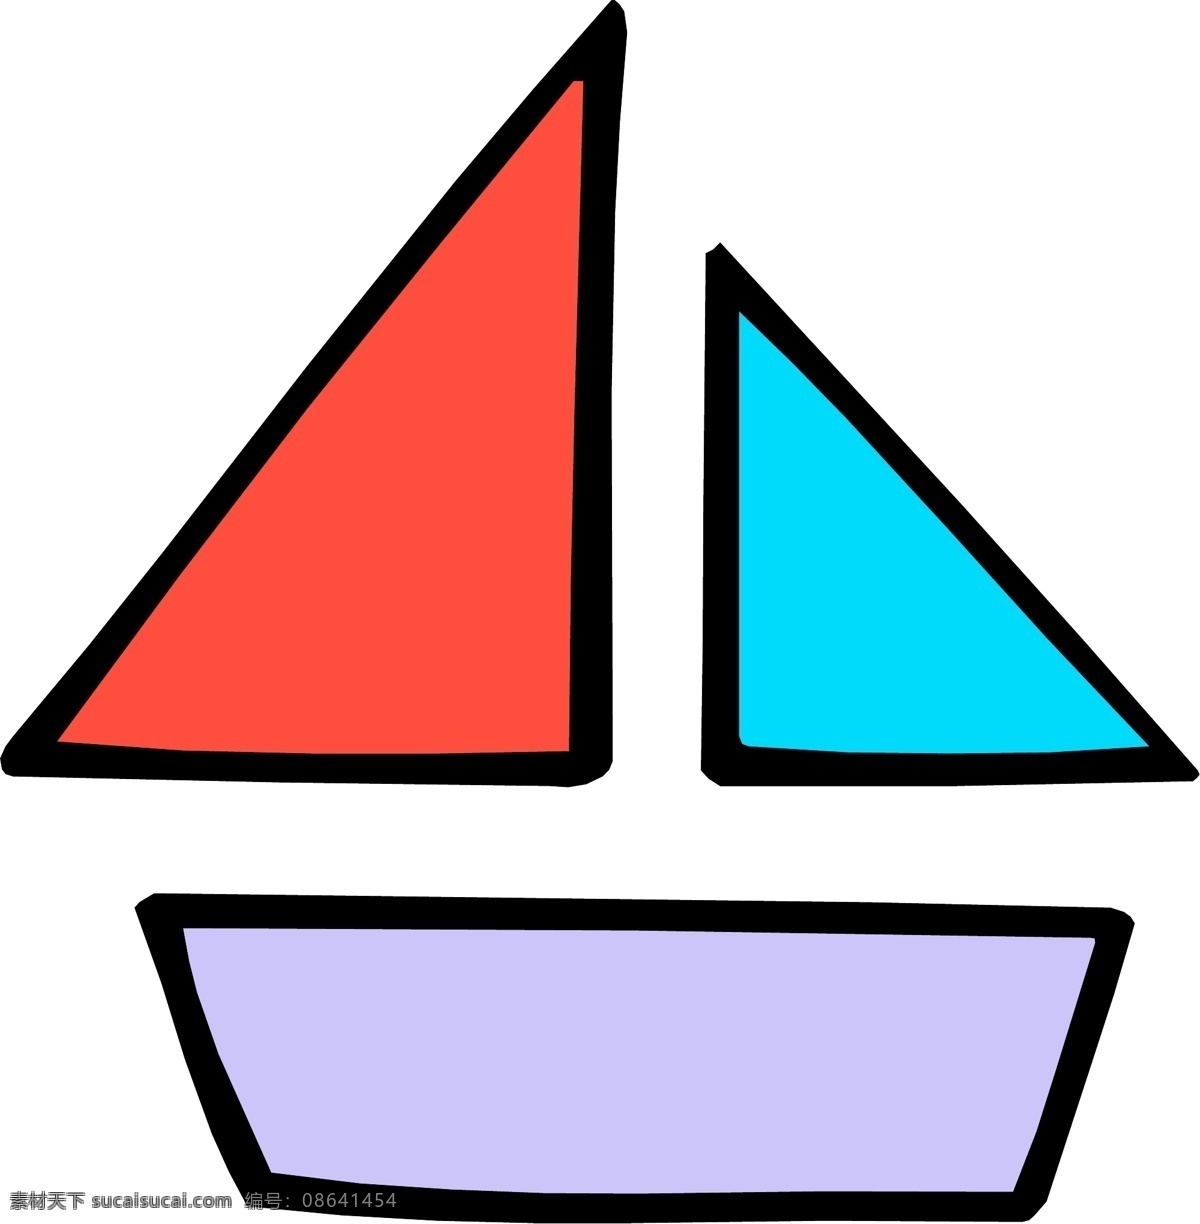 轮船 帆船 小船 商业矢量 矢量风景建筑 矢量下载 轮船帆船小船 网页矢量 矢量图 其他矢量图